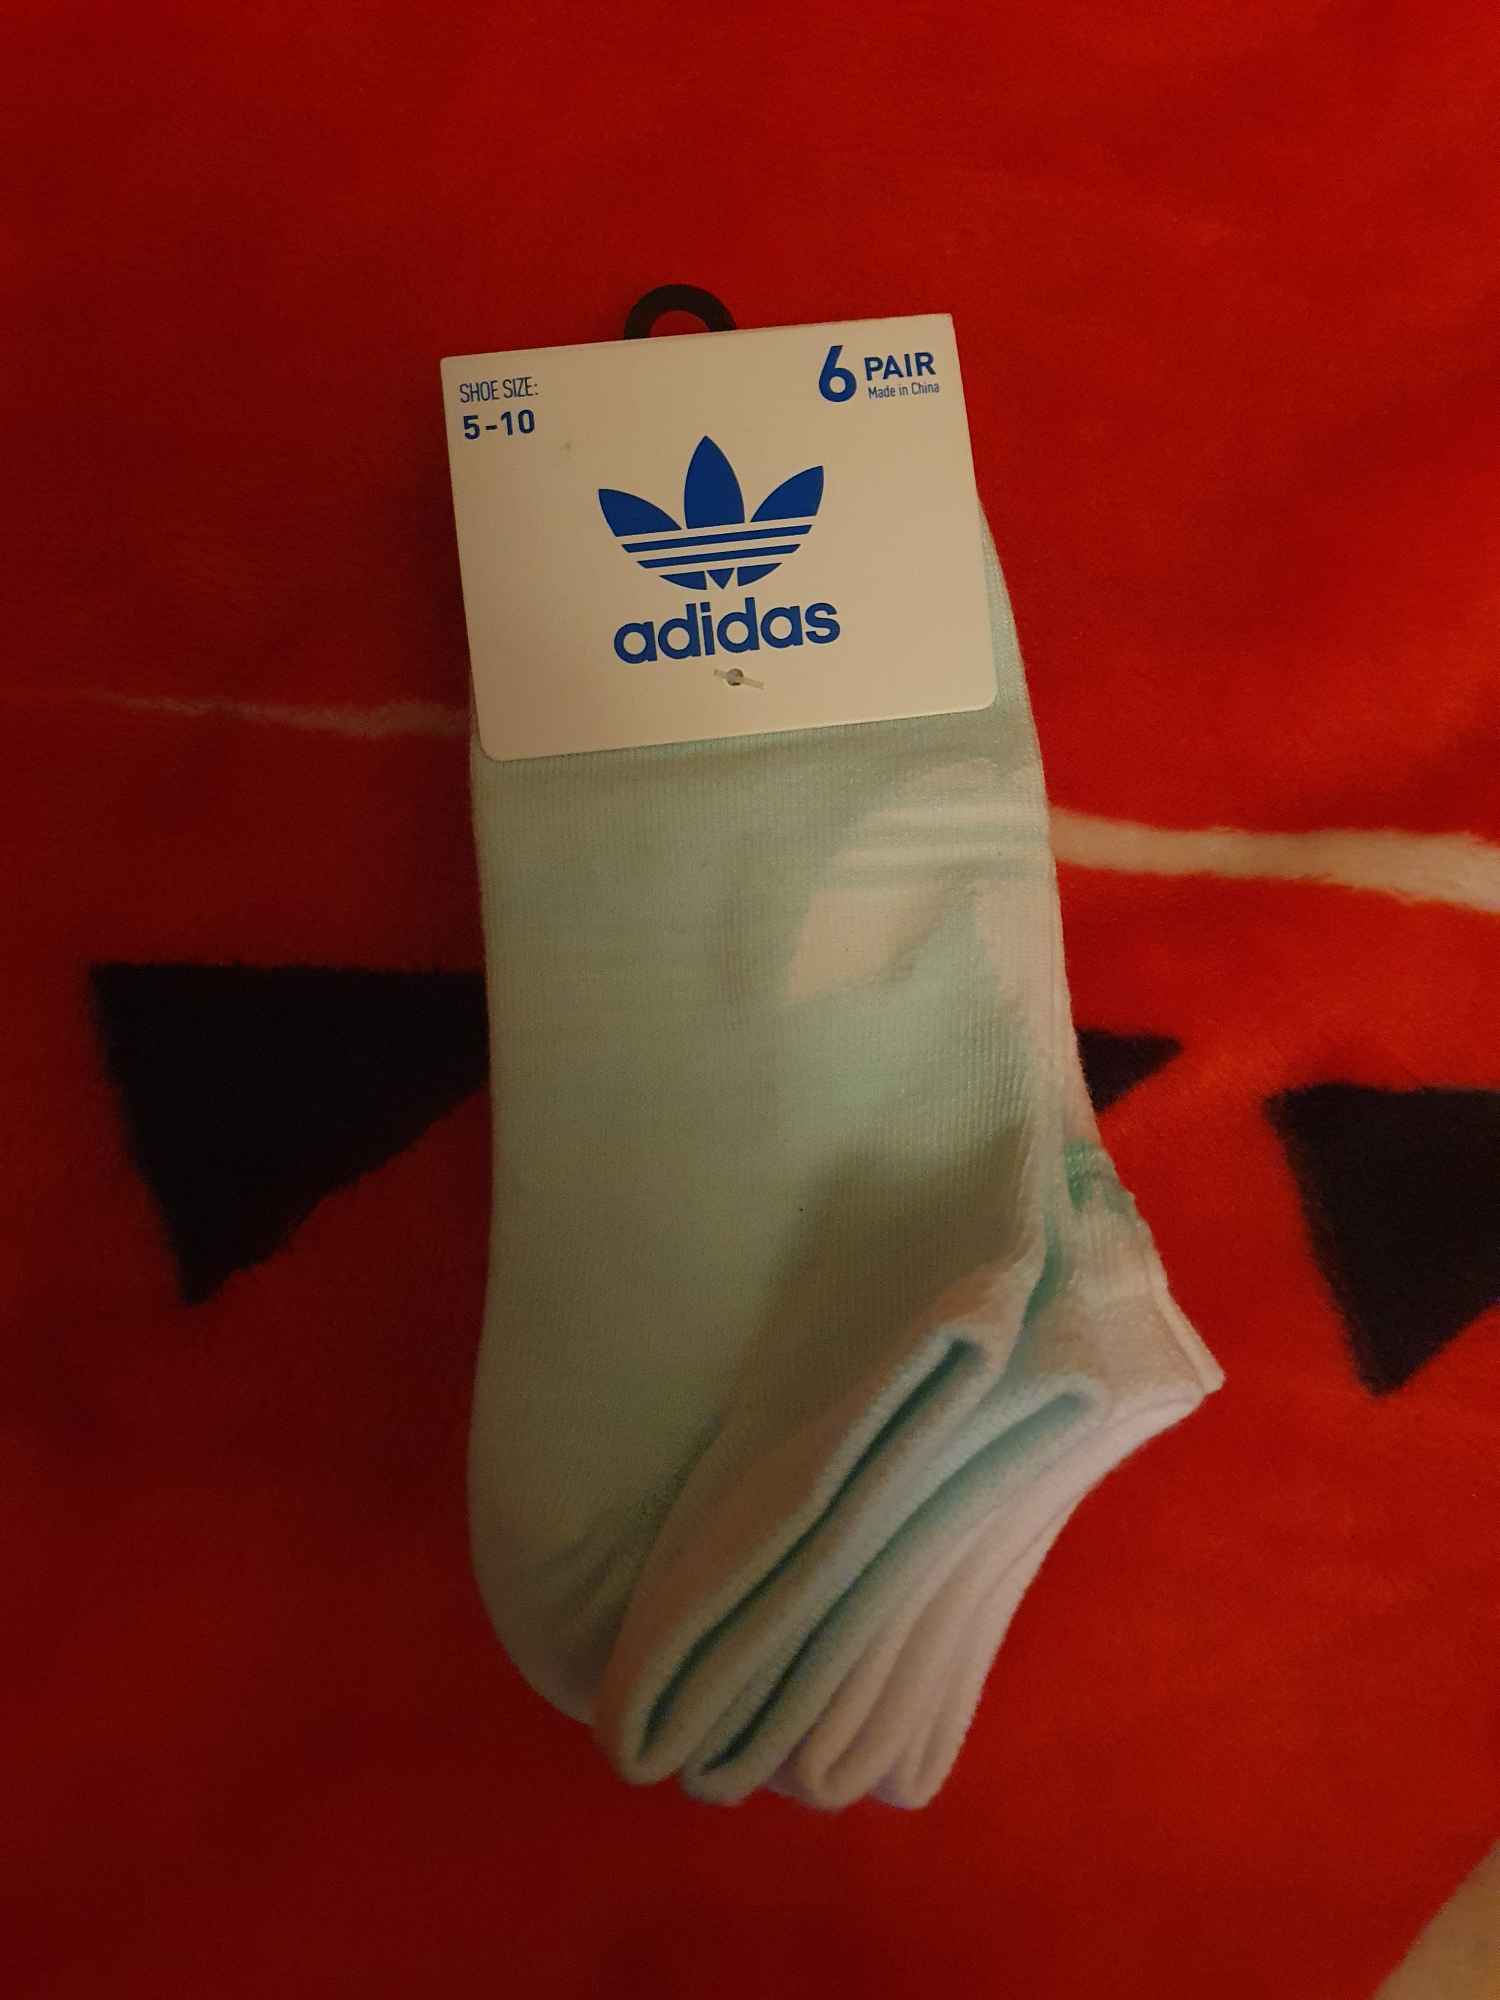 Skarpetki damskie Adidas 6 - pak - turkusowe i białe Włocławek - zdjęcie 3